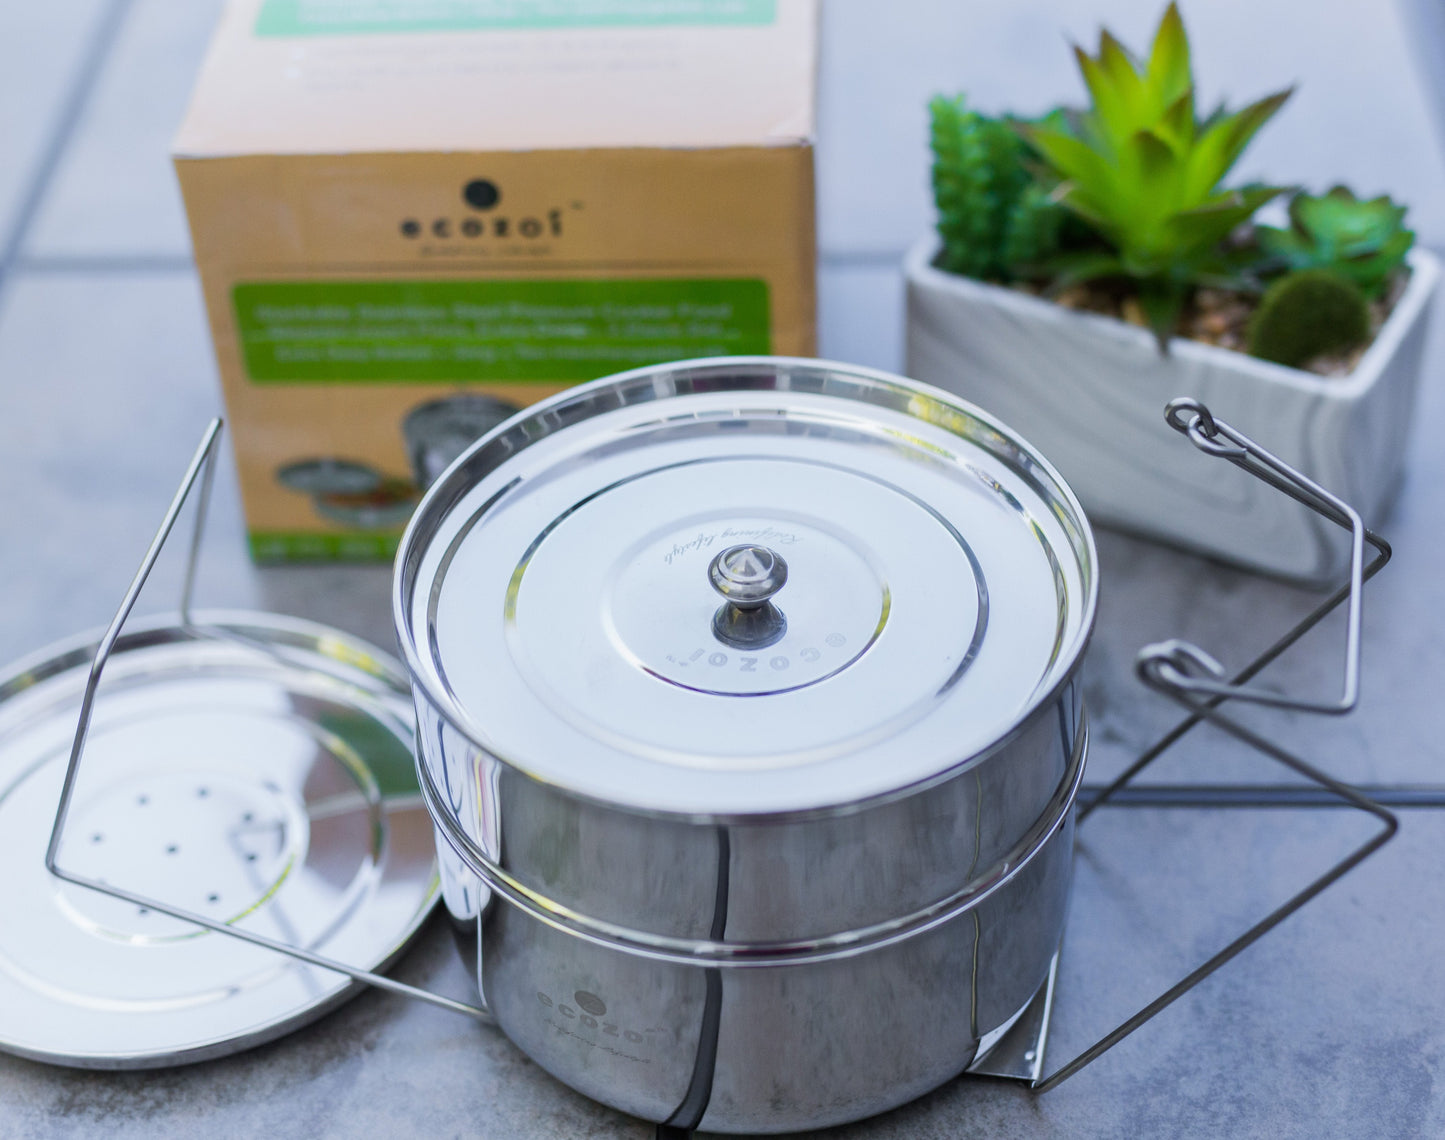 Instant Pot Insert Pans, 2 Tier for 6 Qt / 8 Qt Pressure Cookers by ecozoi